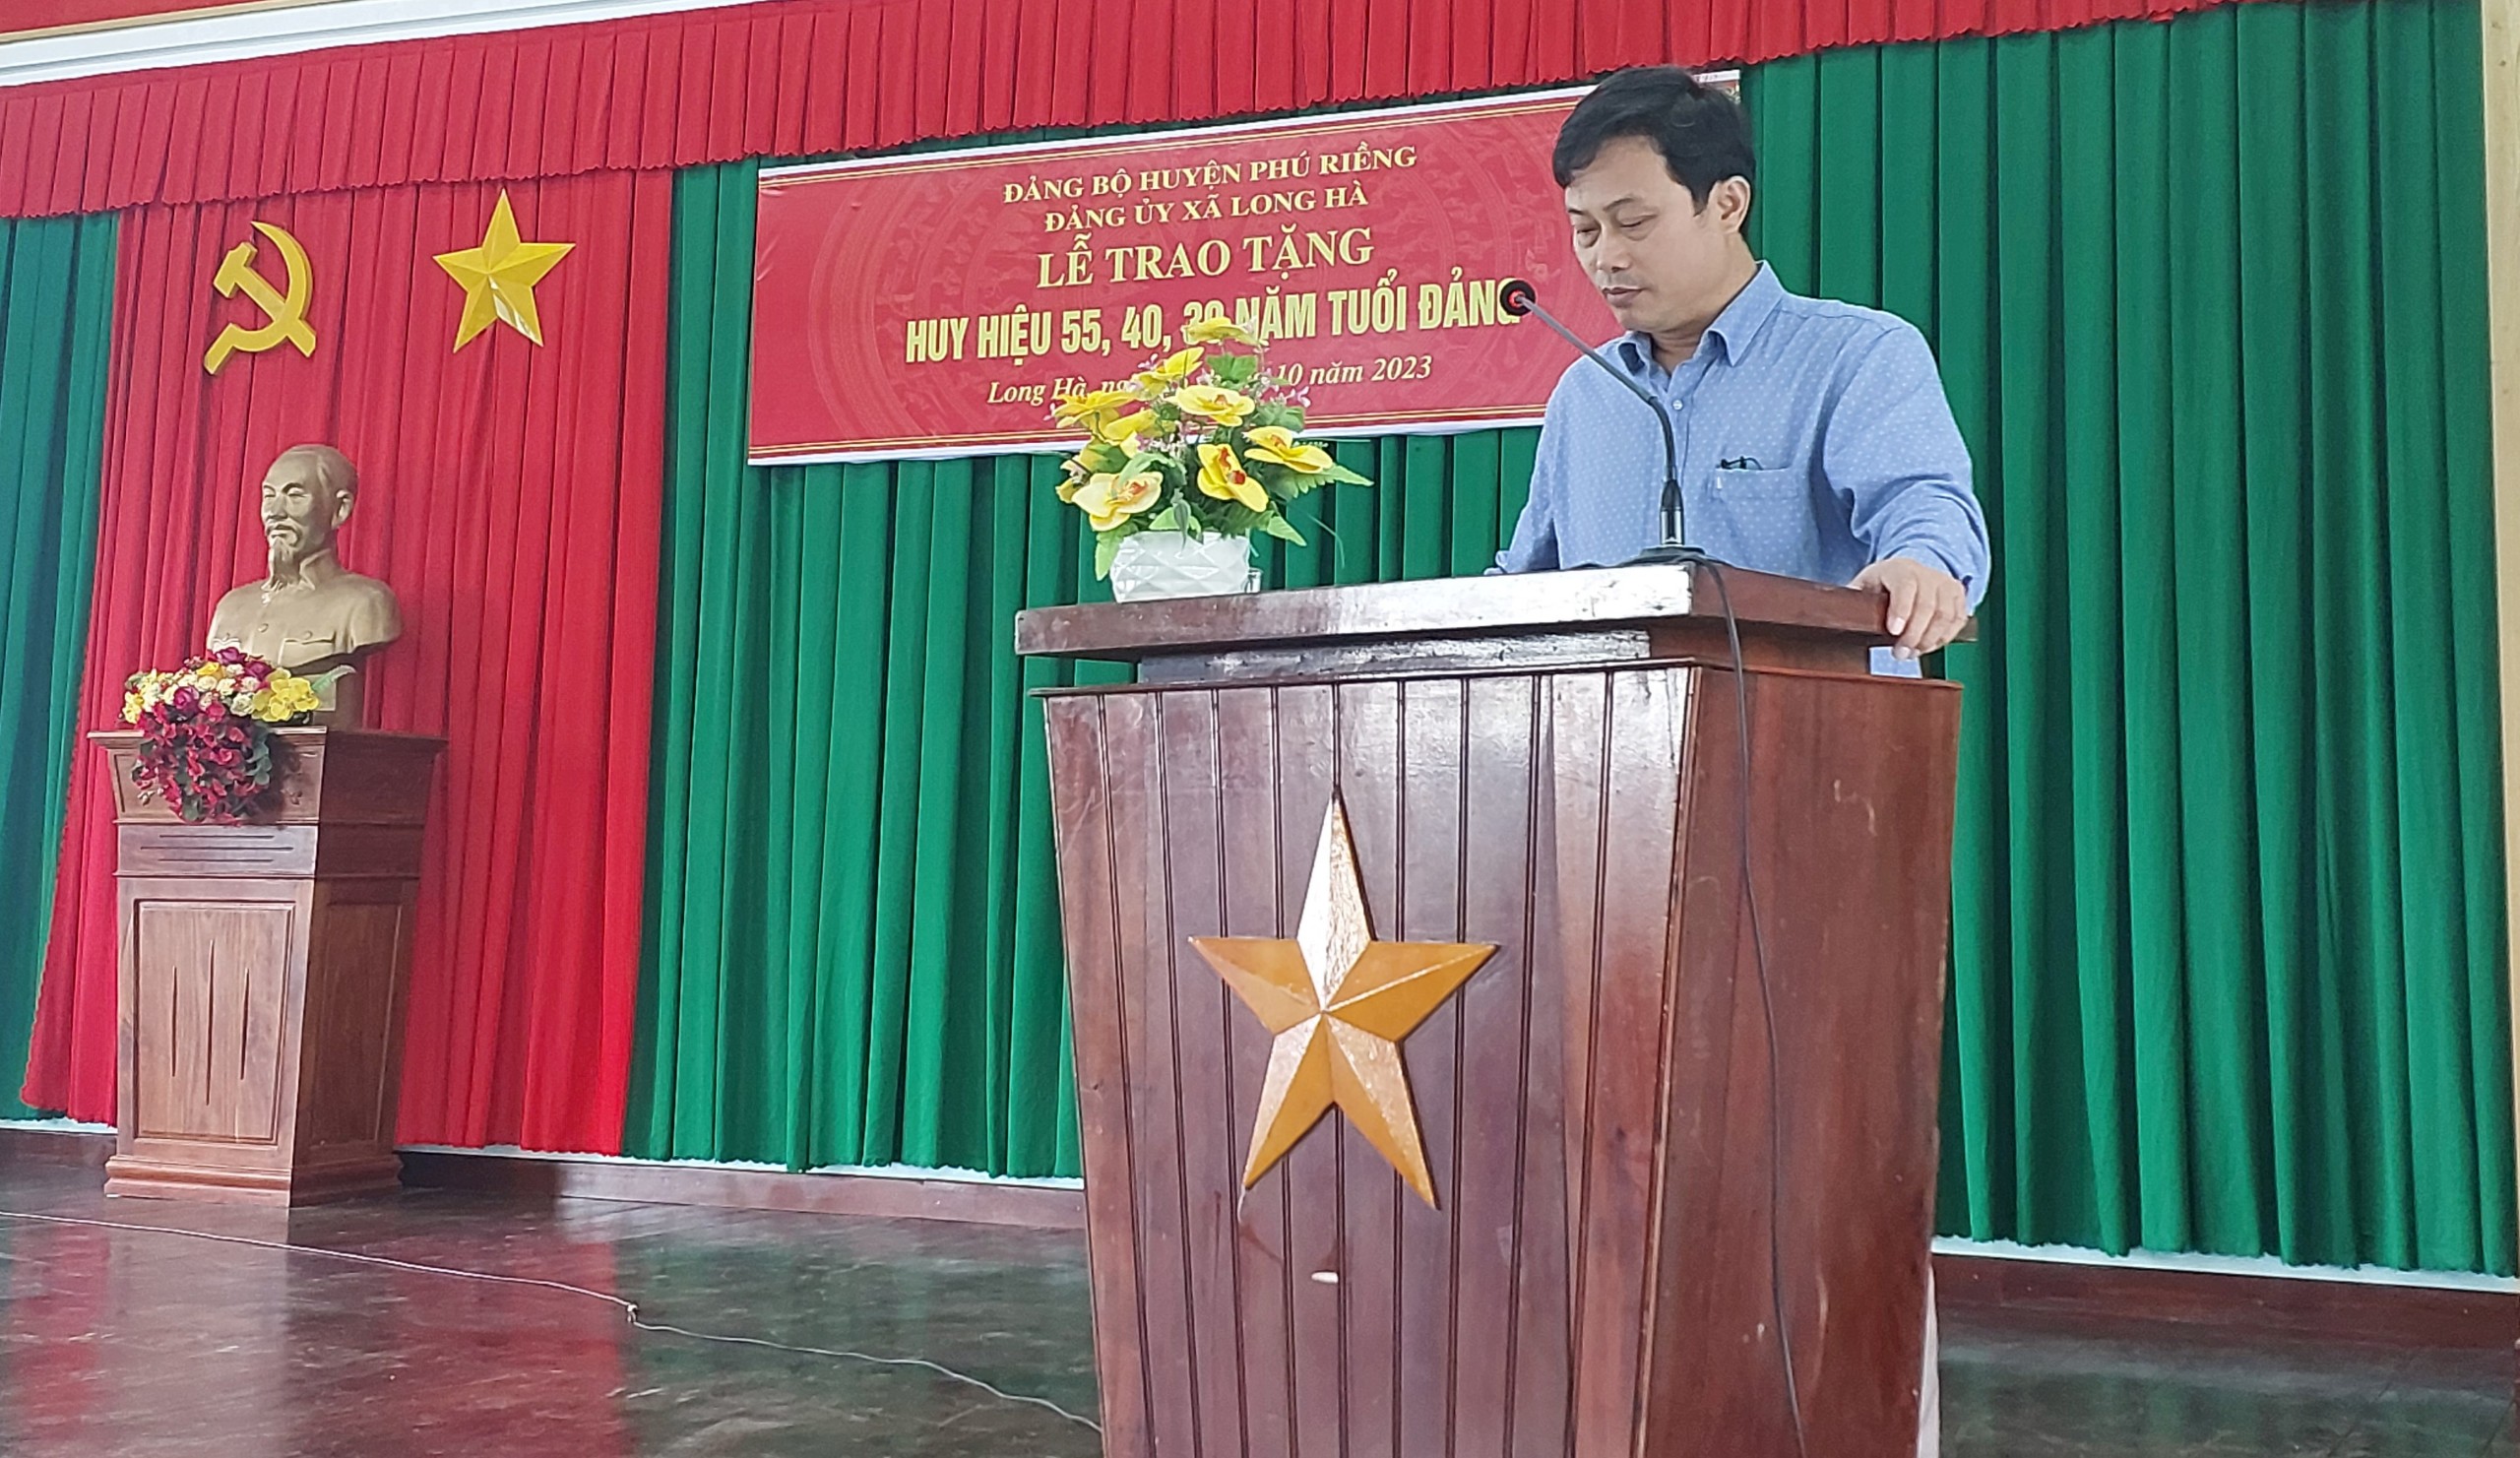 Đồng chí Trần Mạnh Tuyển phát biểu chúc mừng